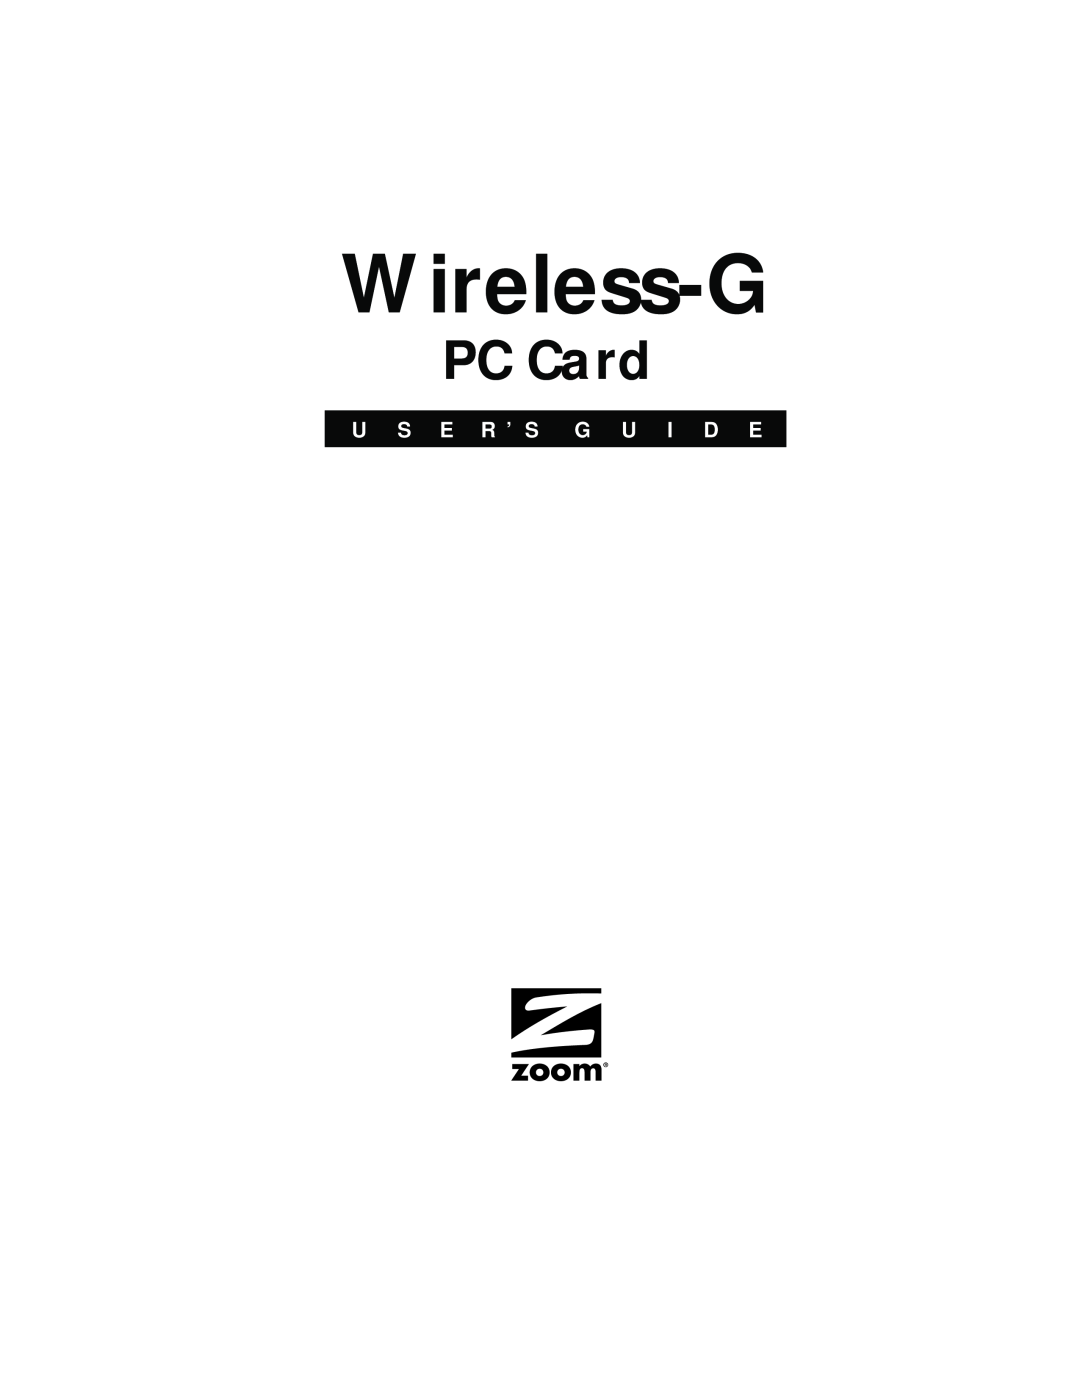 Zoom 4412A/TF manual Wireless-G, PC Card, U S E R ’ S G U I D E 